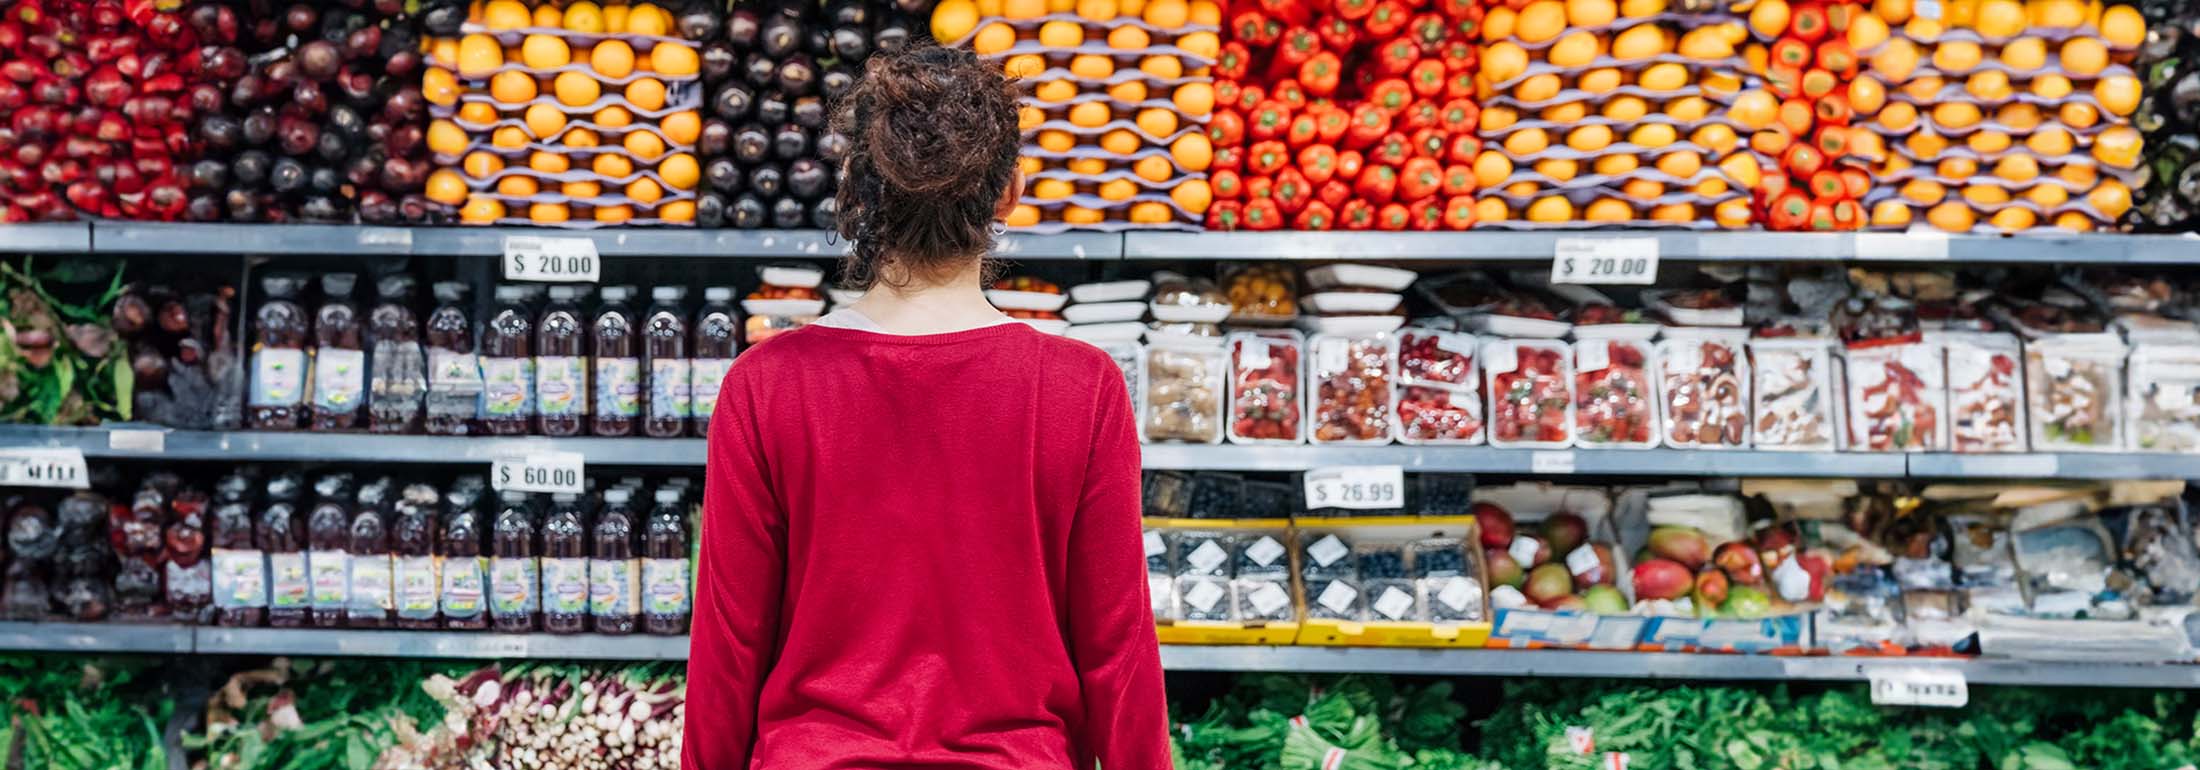 Frau beim Einkaufen vor Obst und Gemüseregal